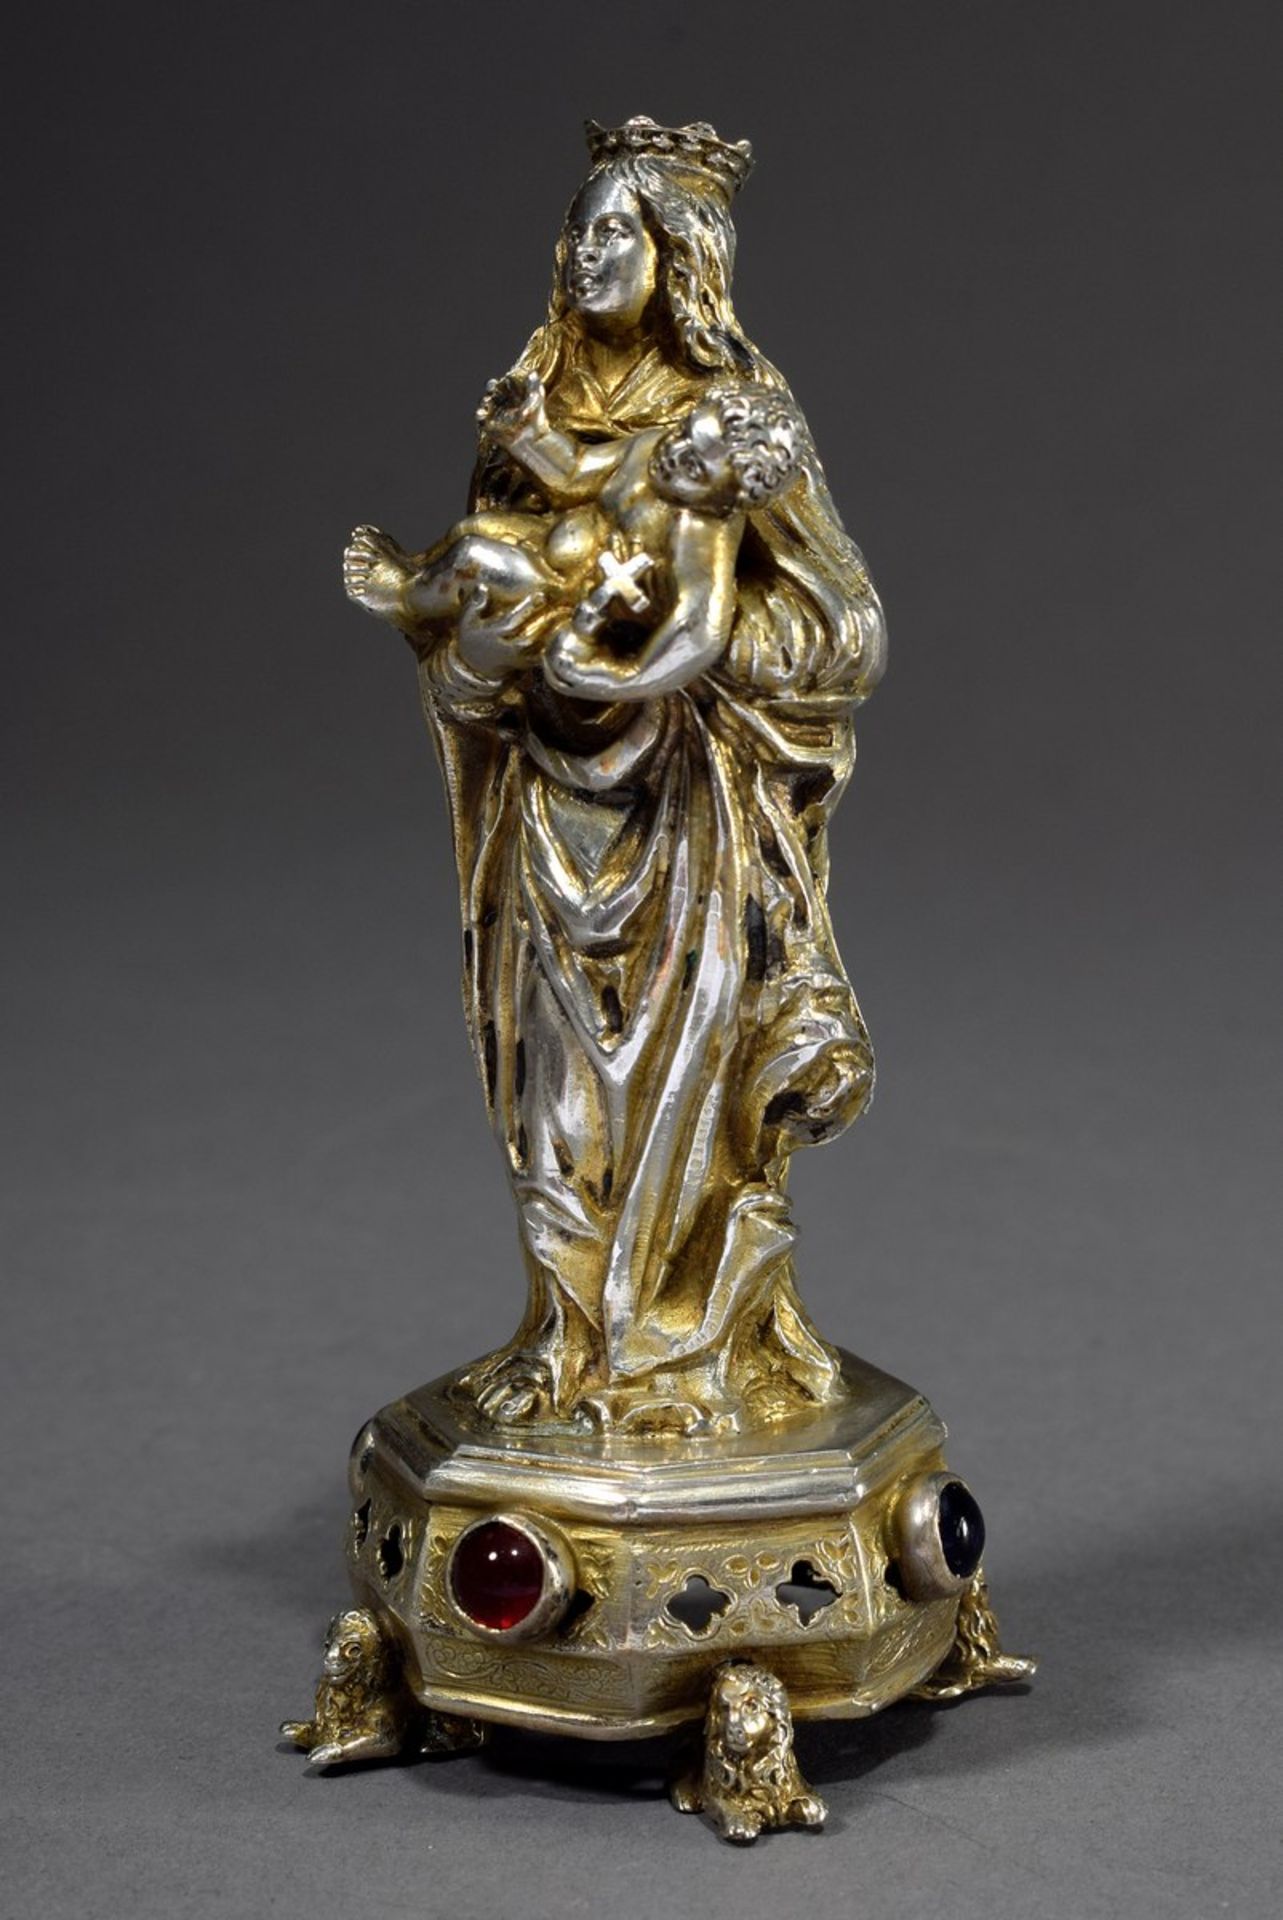 Statuette "Stehende Madonna mit Kind" auf durchbrochenem von 4 Löwen getragenem Postament, mit - Bild 4 aus 6